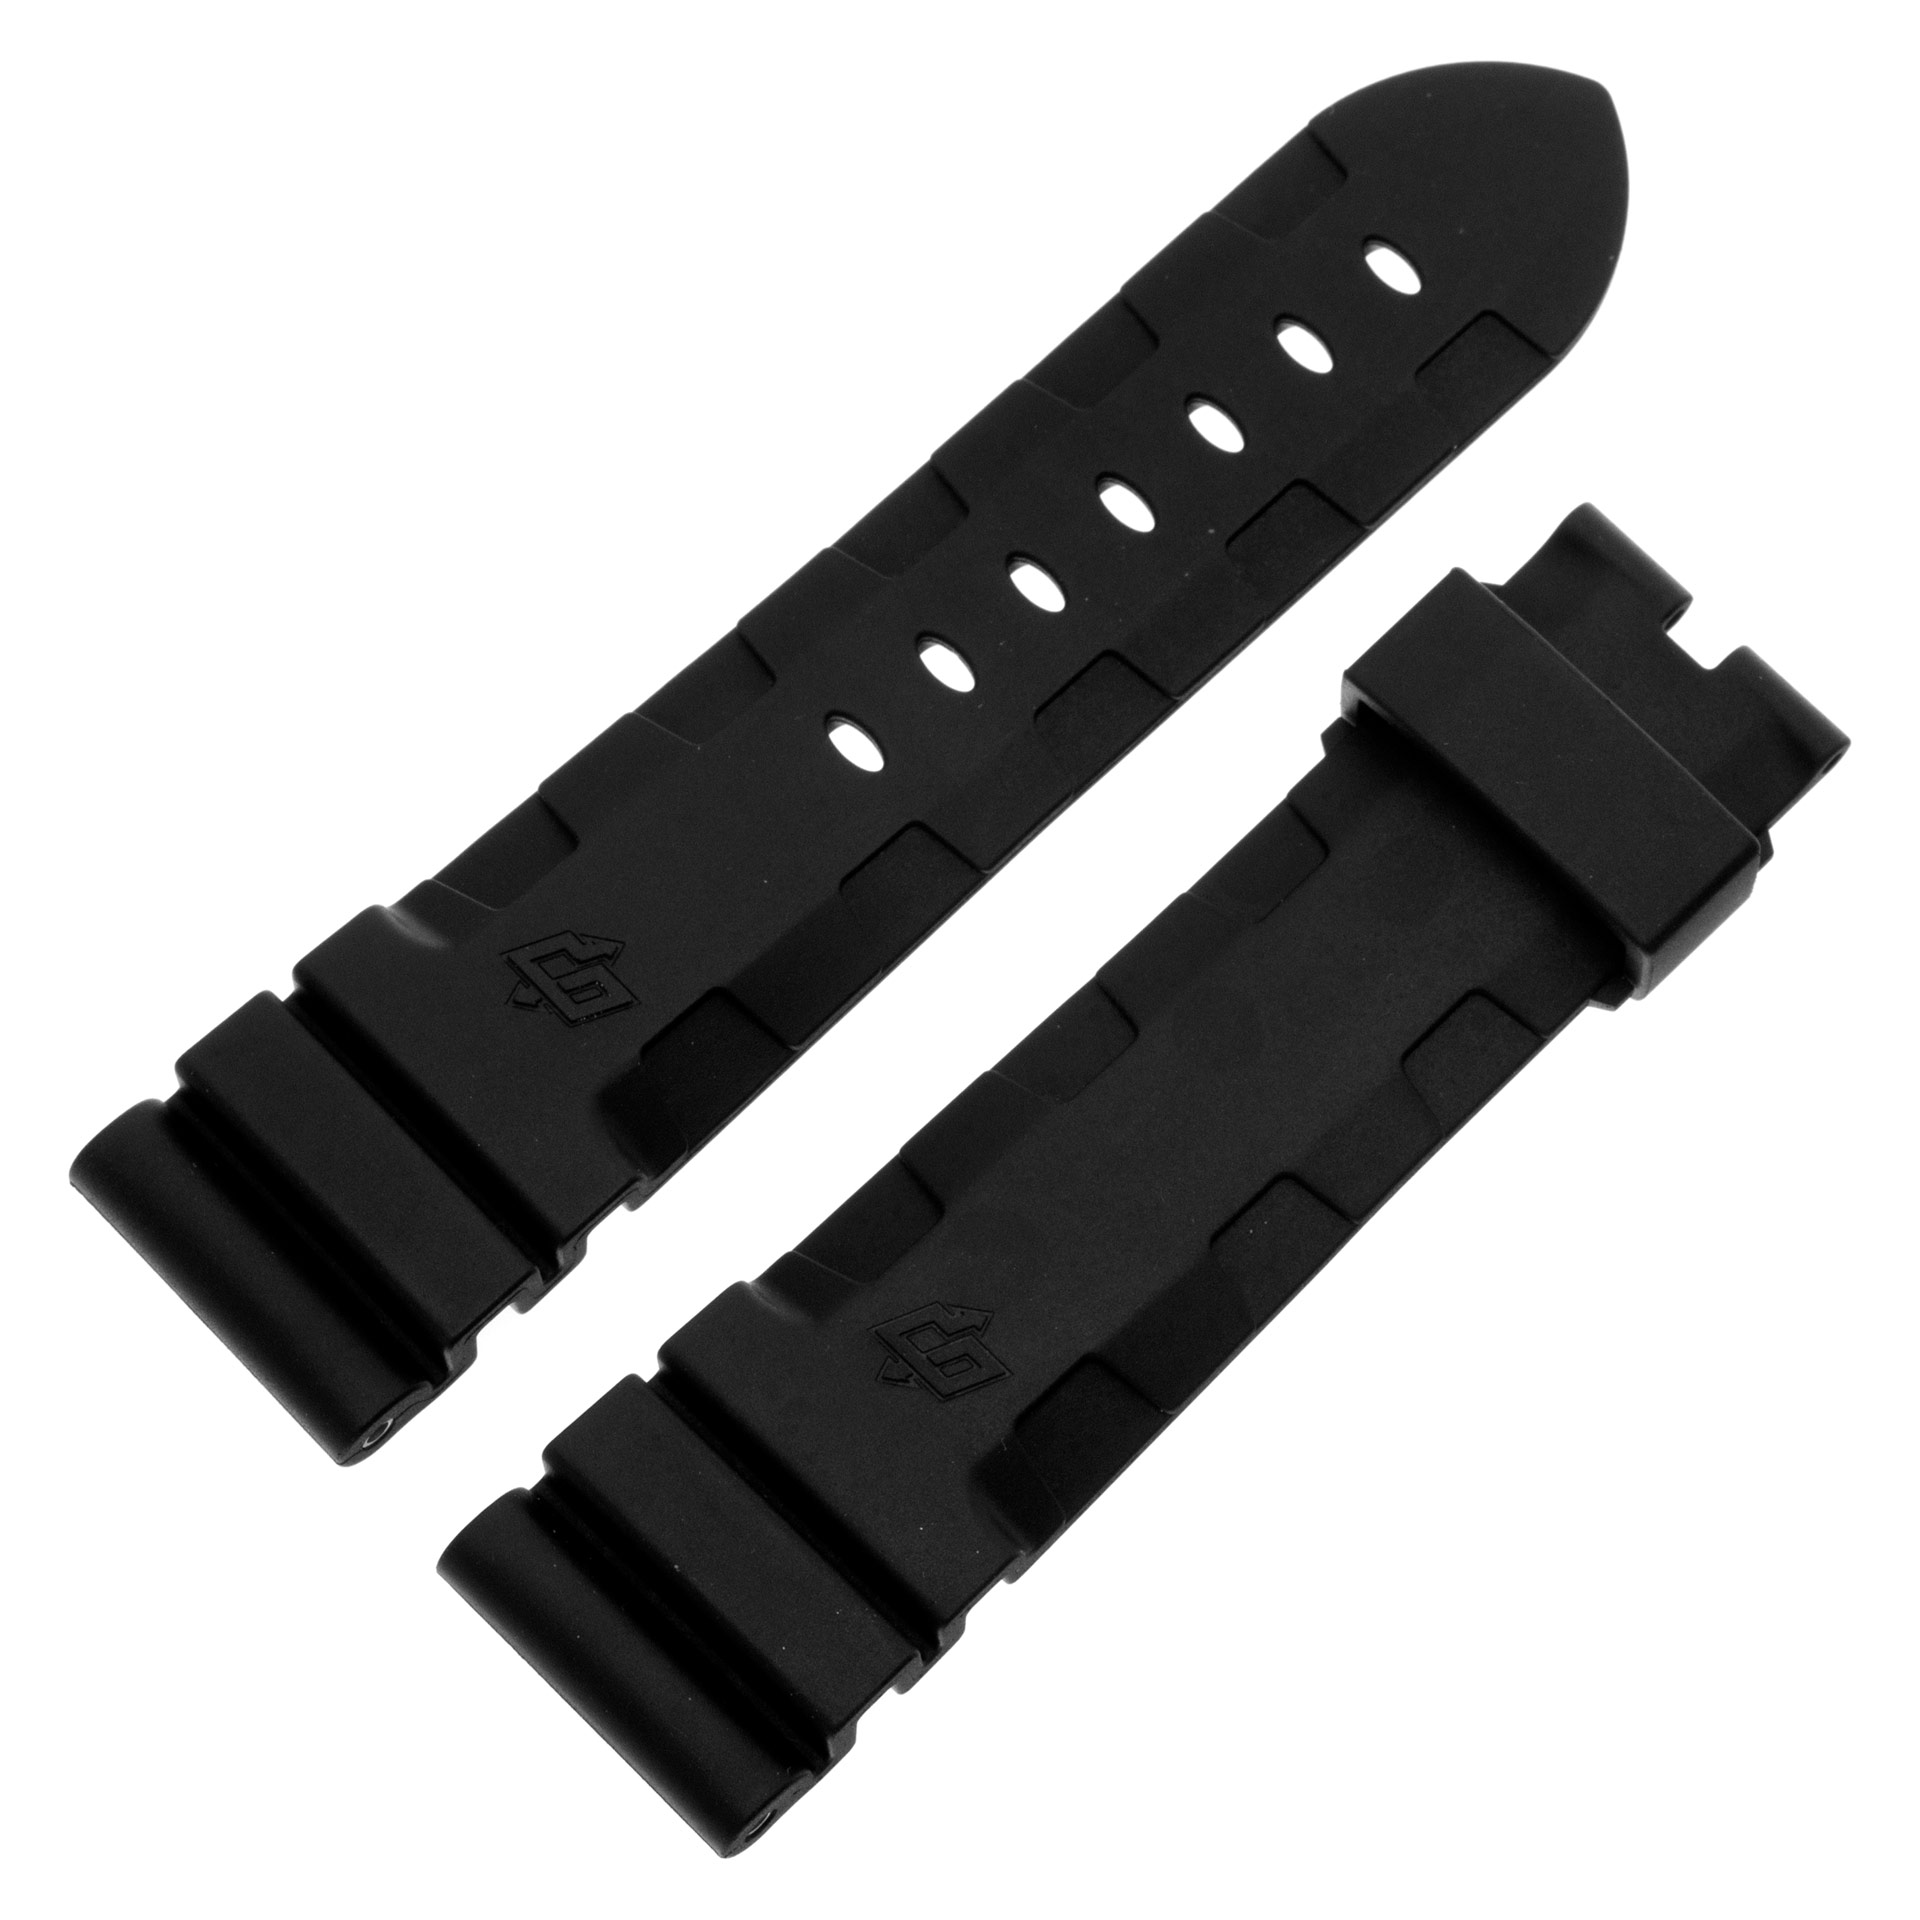 Panerai Officine Caoutchouc black rubber strap (24mmx 20)